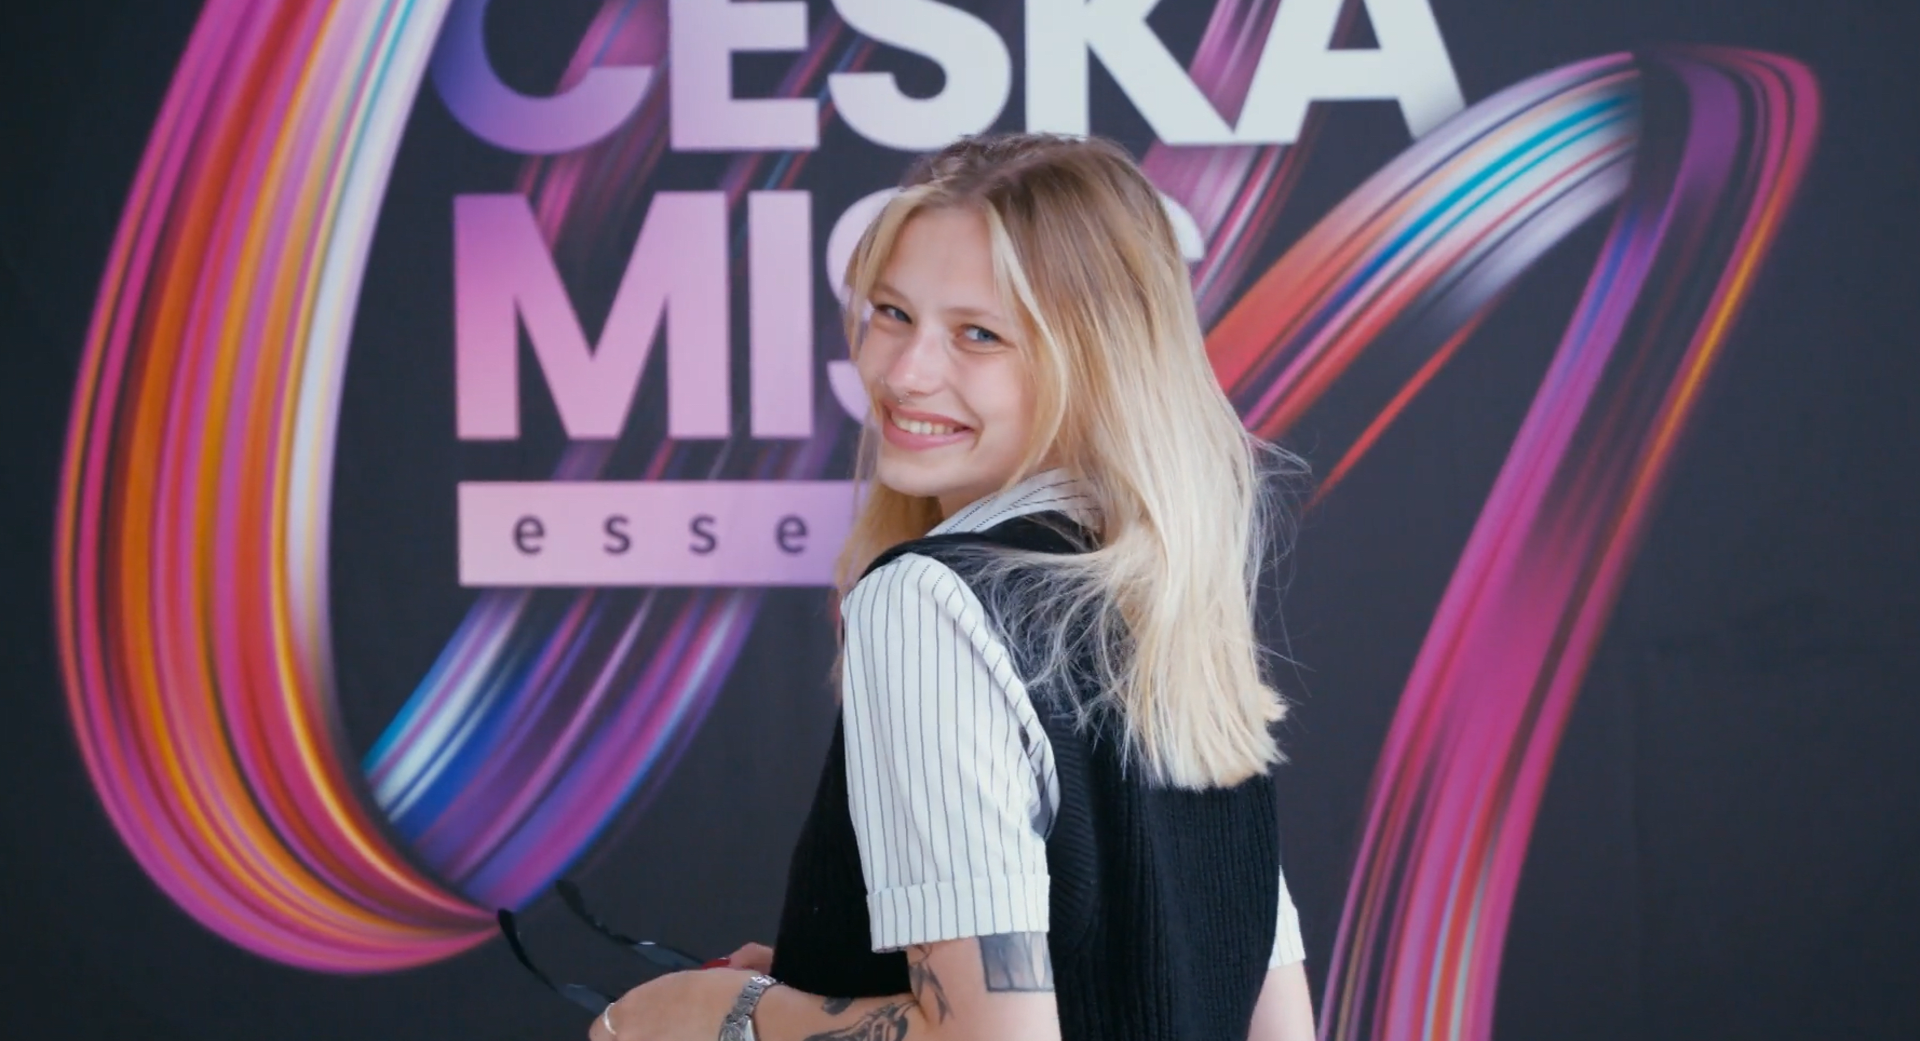 Semifinalistka Česká Miss Essens Tereza Růžičková